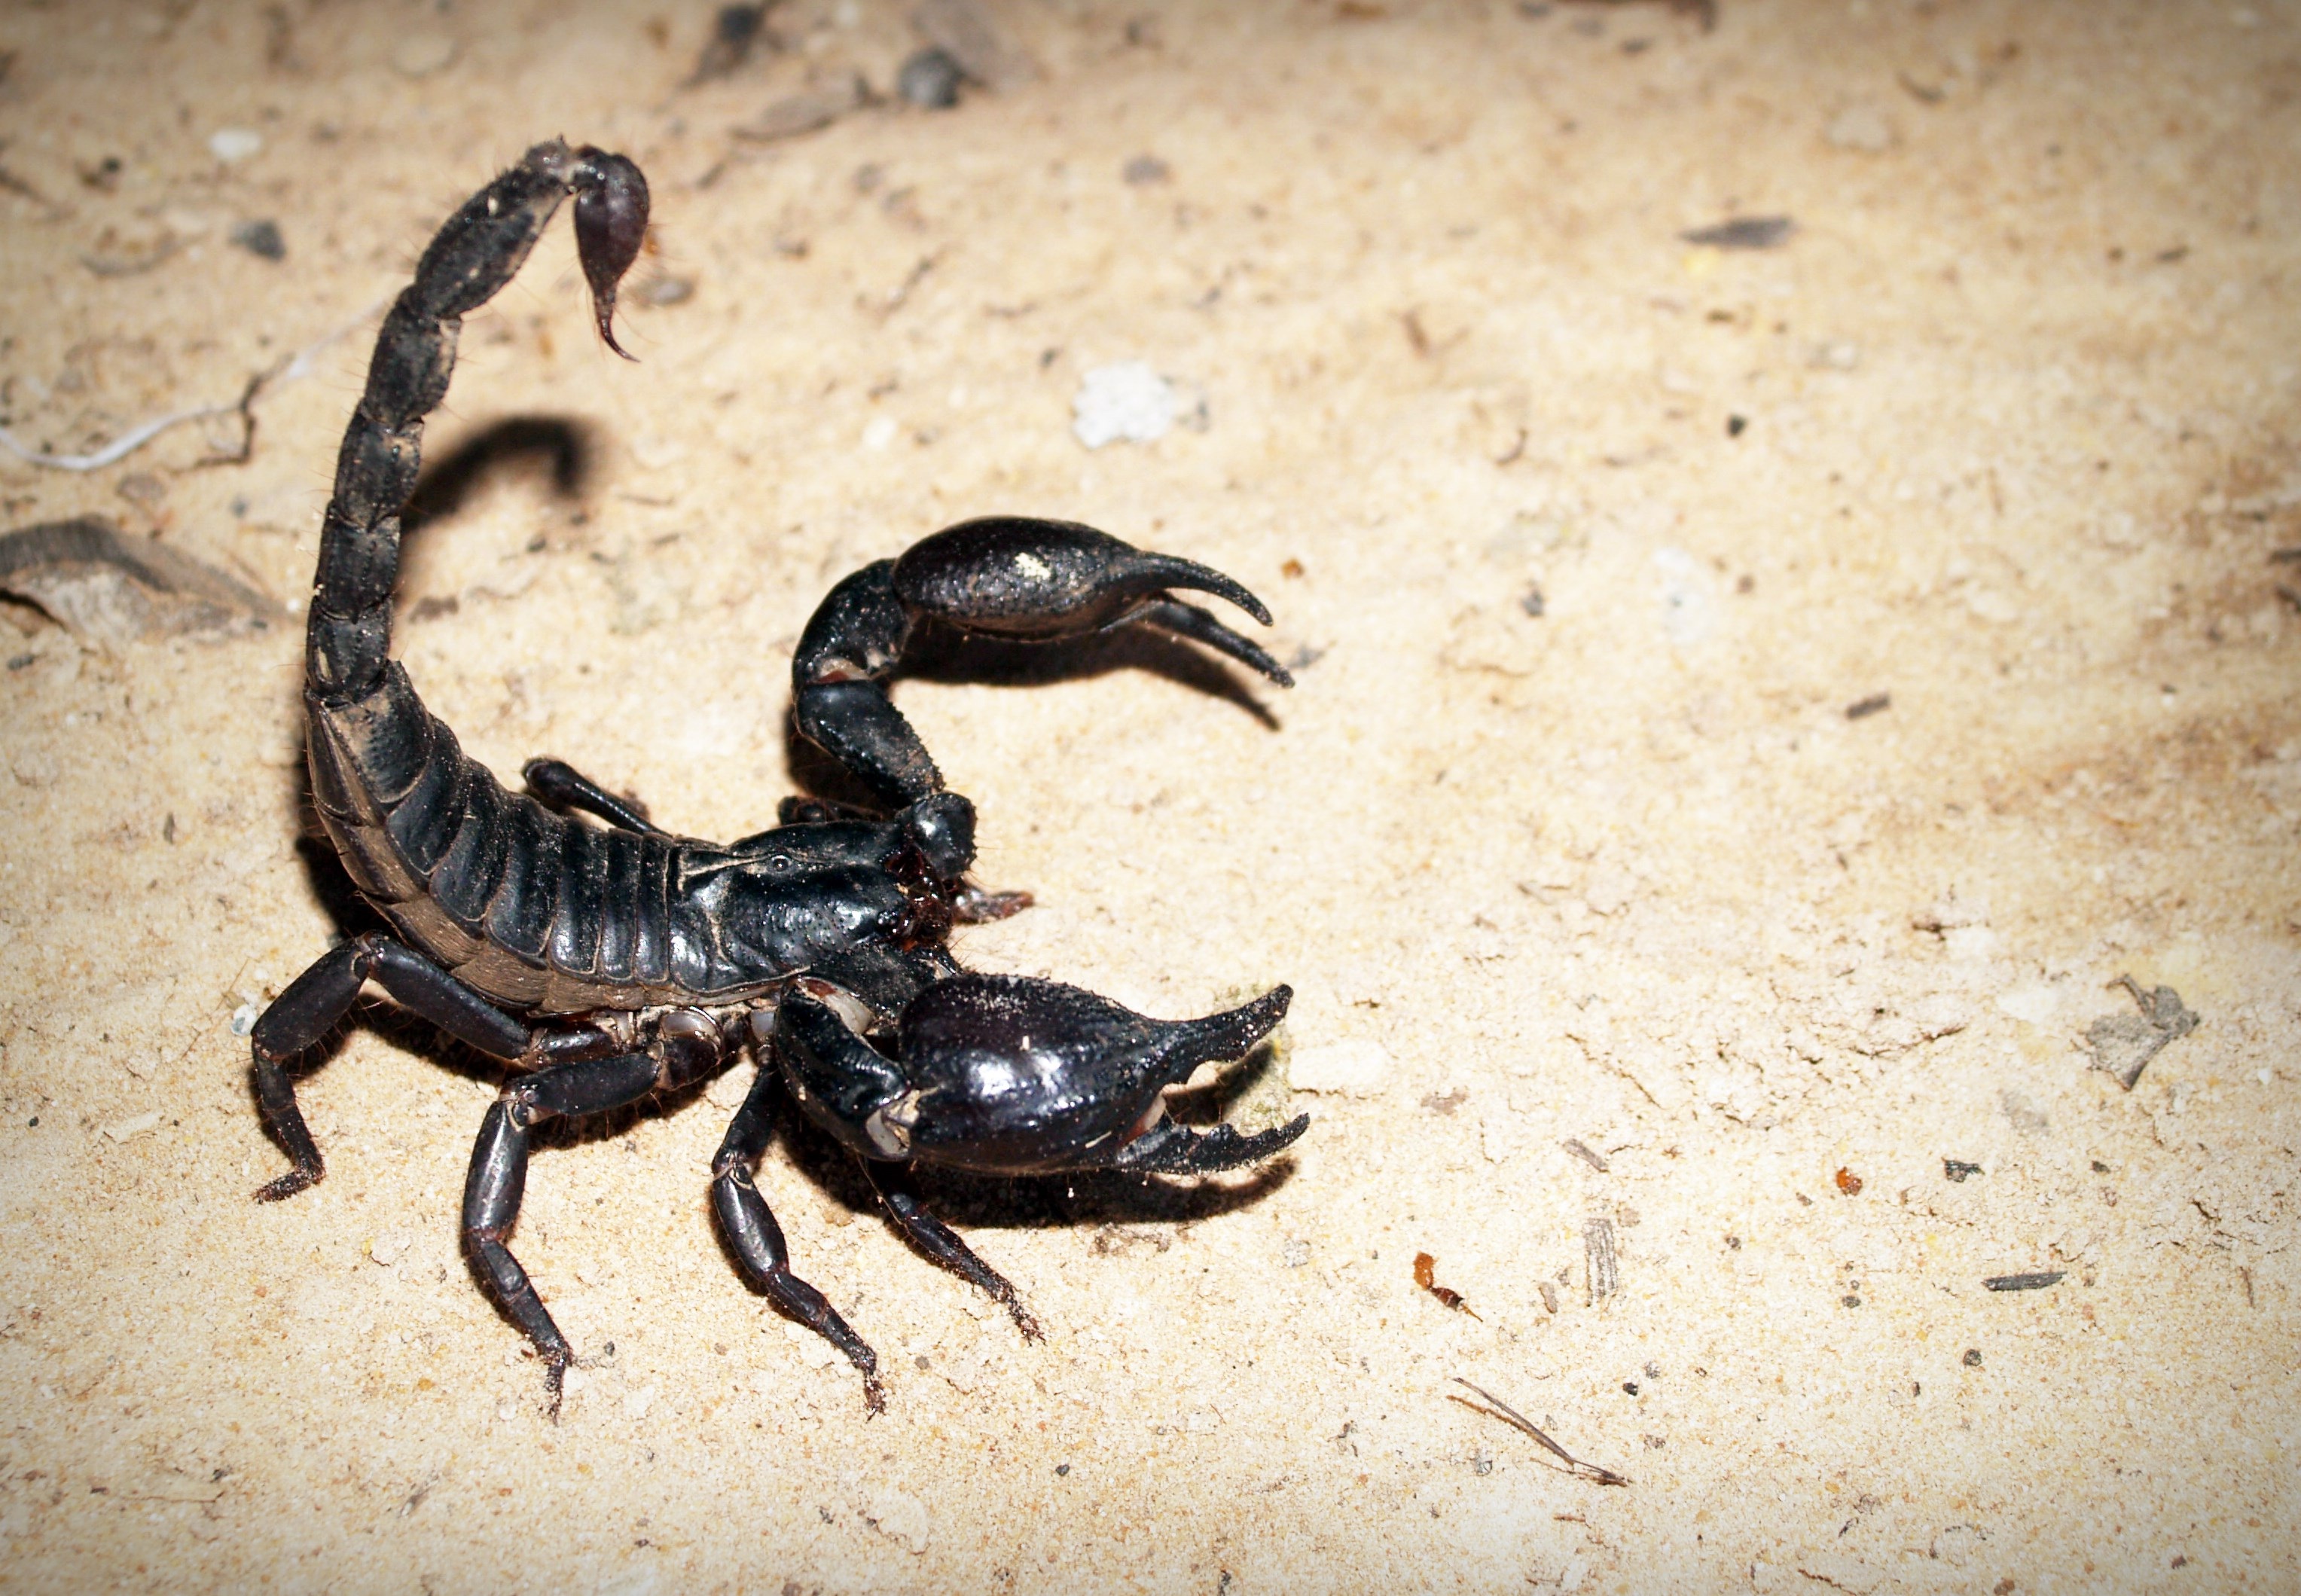 A black scorpion on the beach